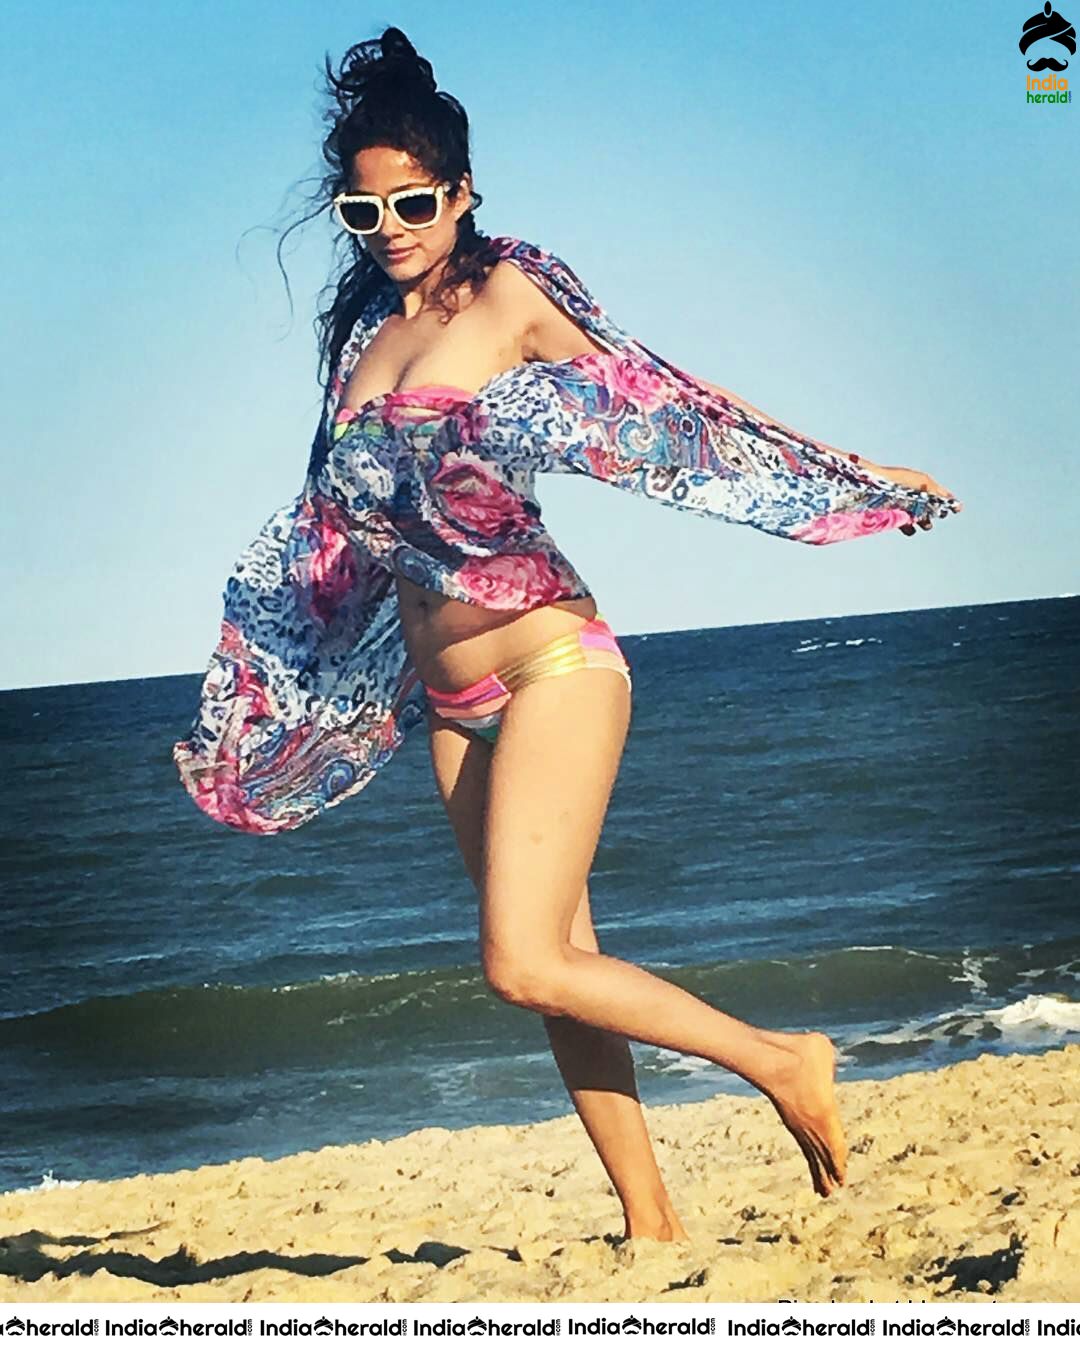 Hot Tempting Bikini Photos of Desi Beauty Actress Vidya Malvade Set 1